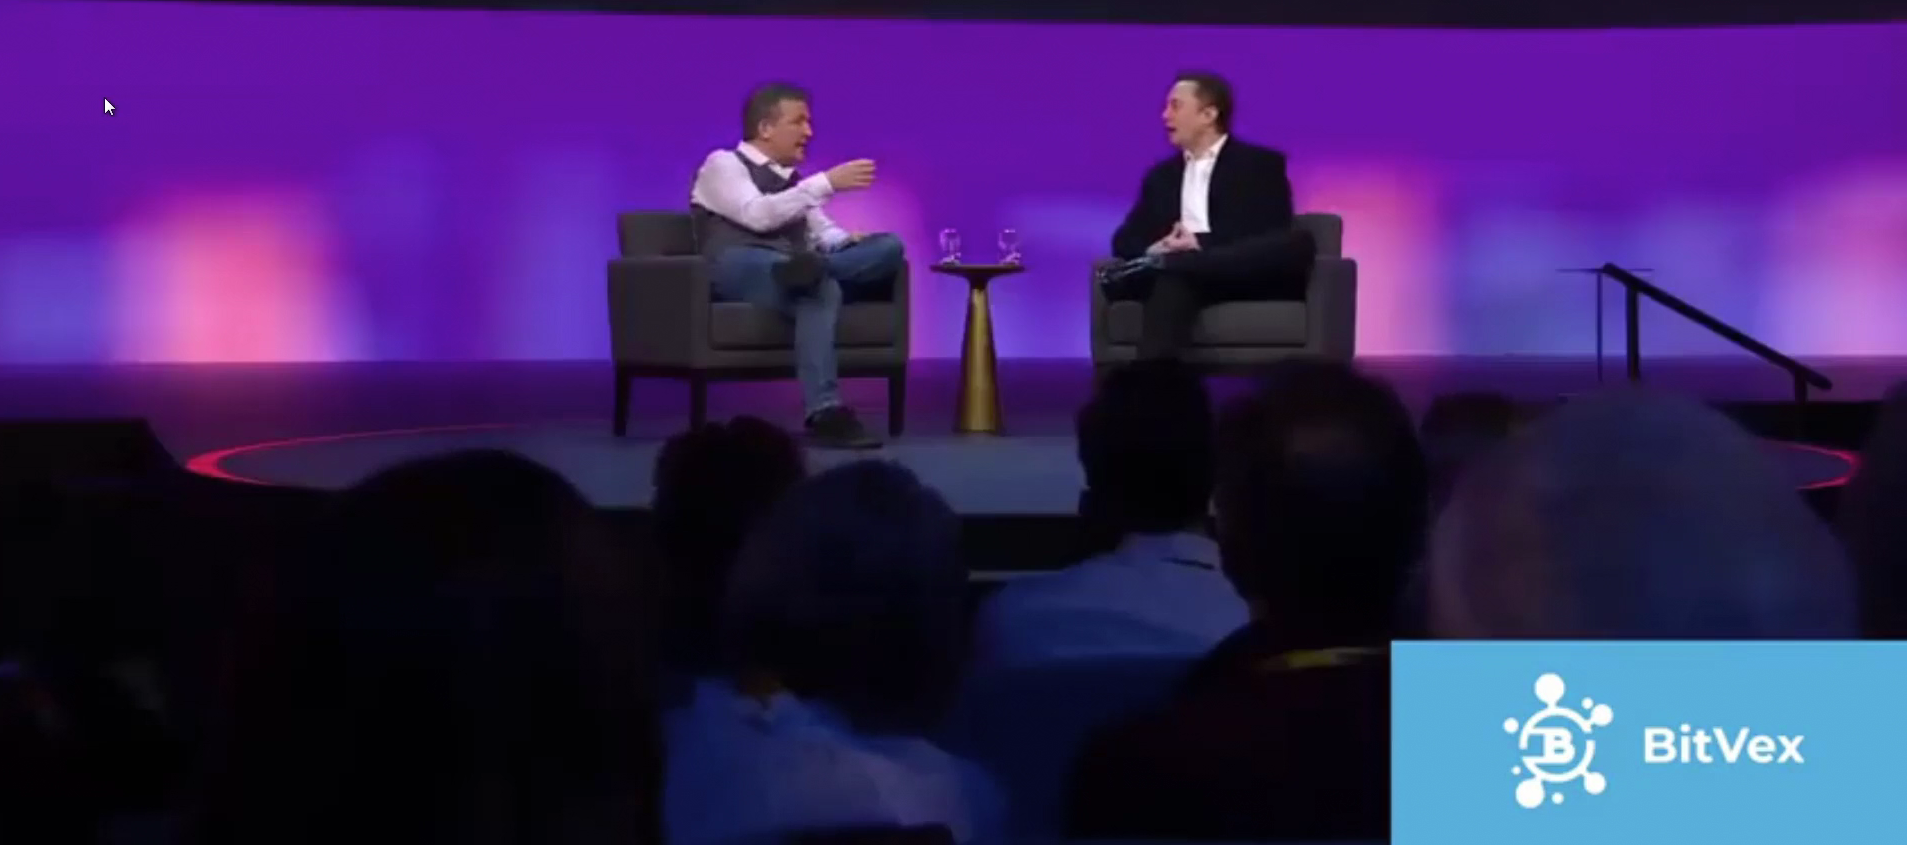 Los estafadores modificaron un video real para cambiar el discurso de Musk